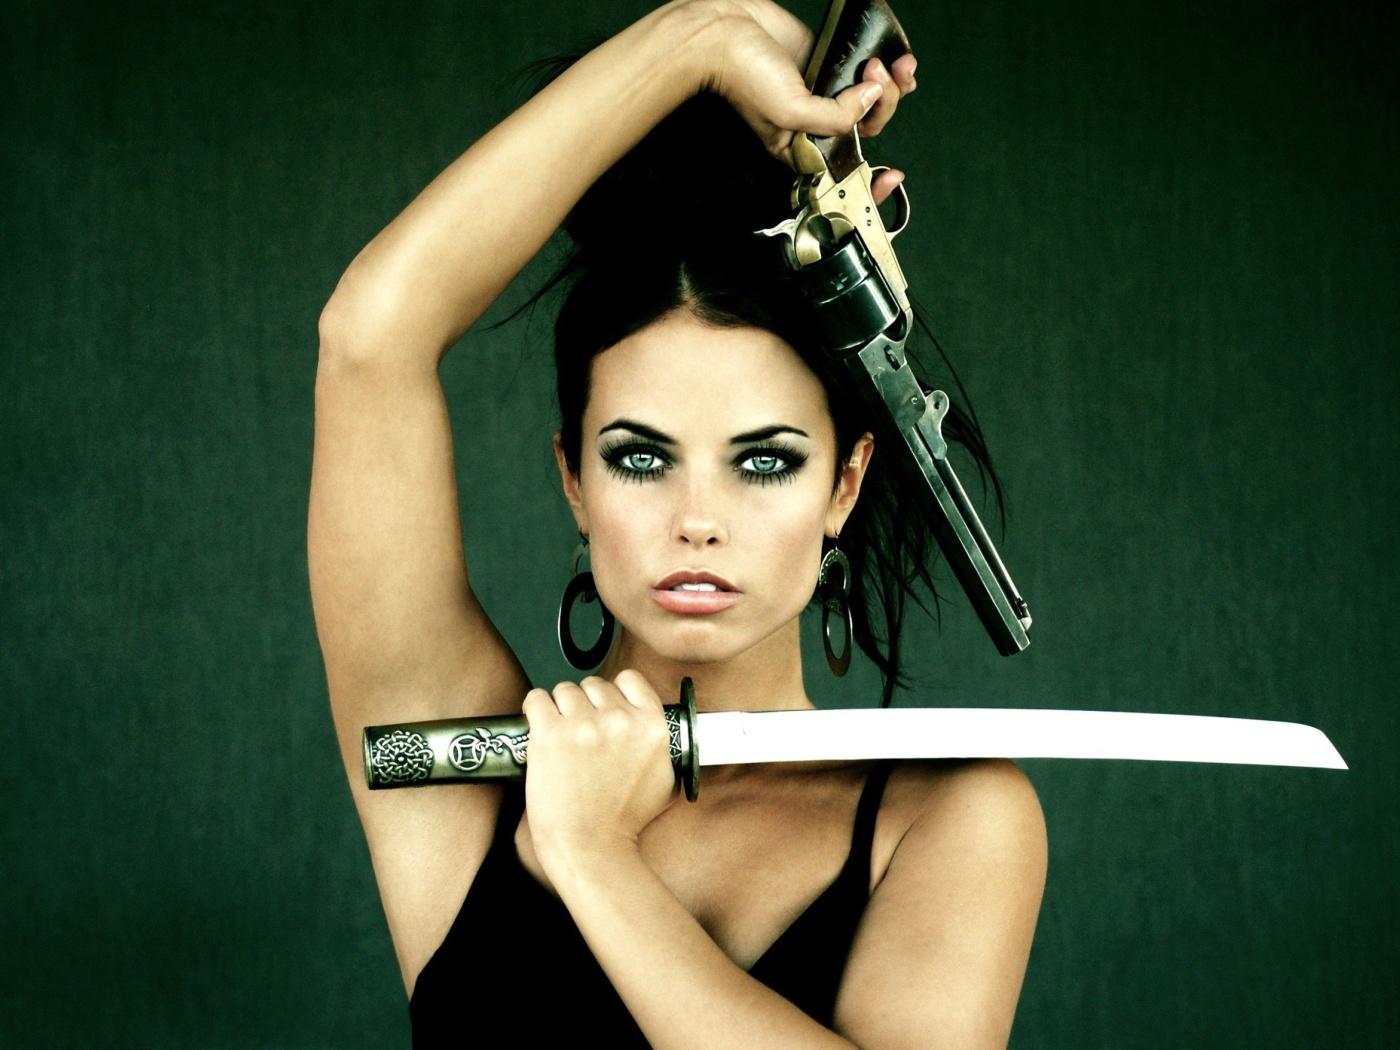 Warrior girl with swords wallpaper 1400x1050